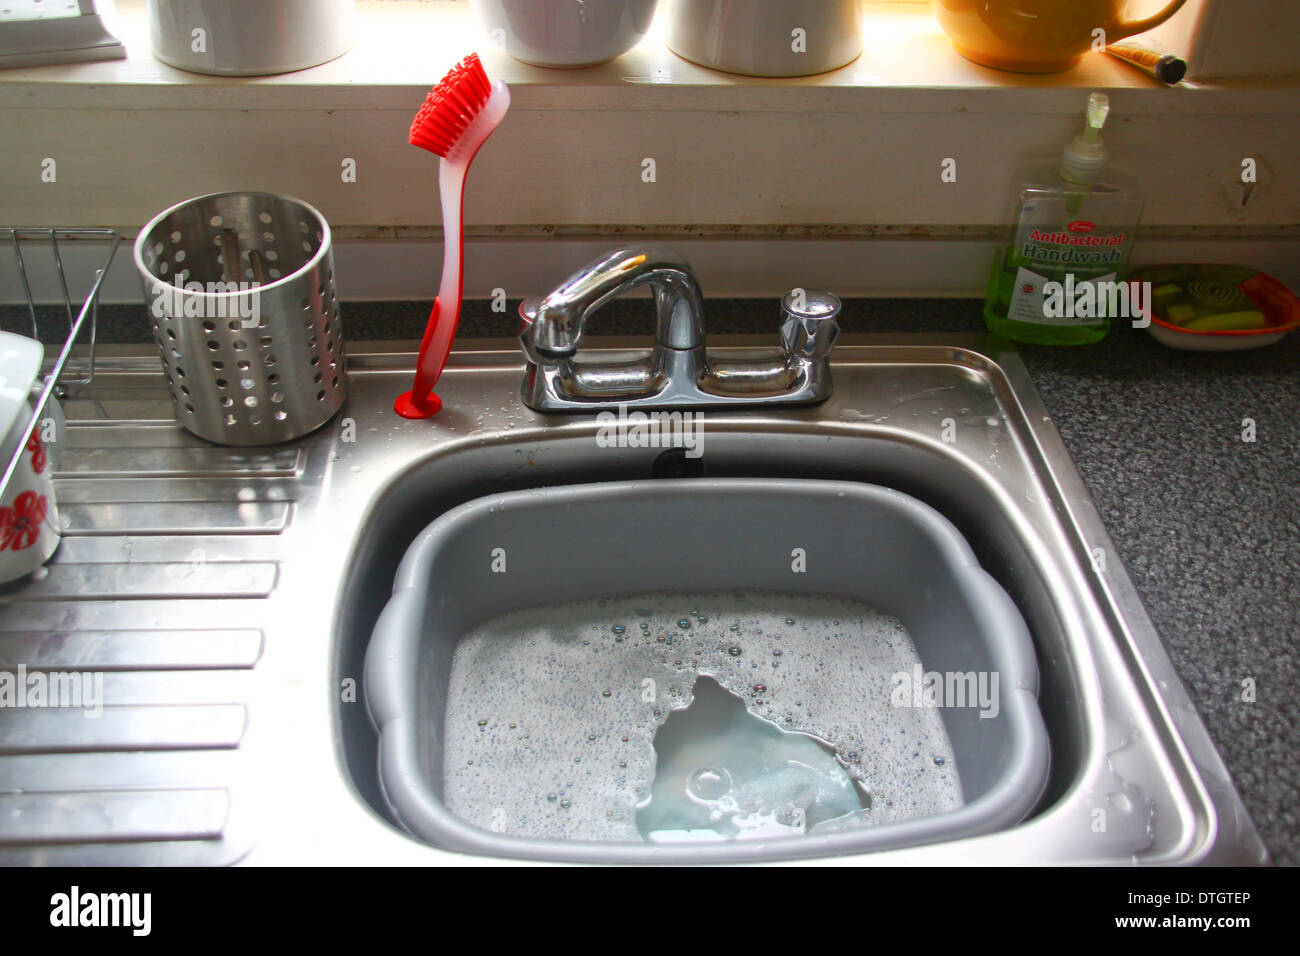 Acciaio inox lavello da cucina con bacinella di plastica Foto Stock